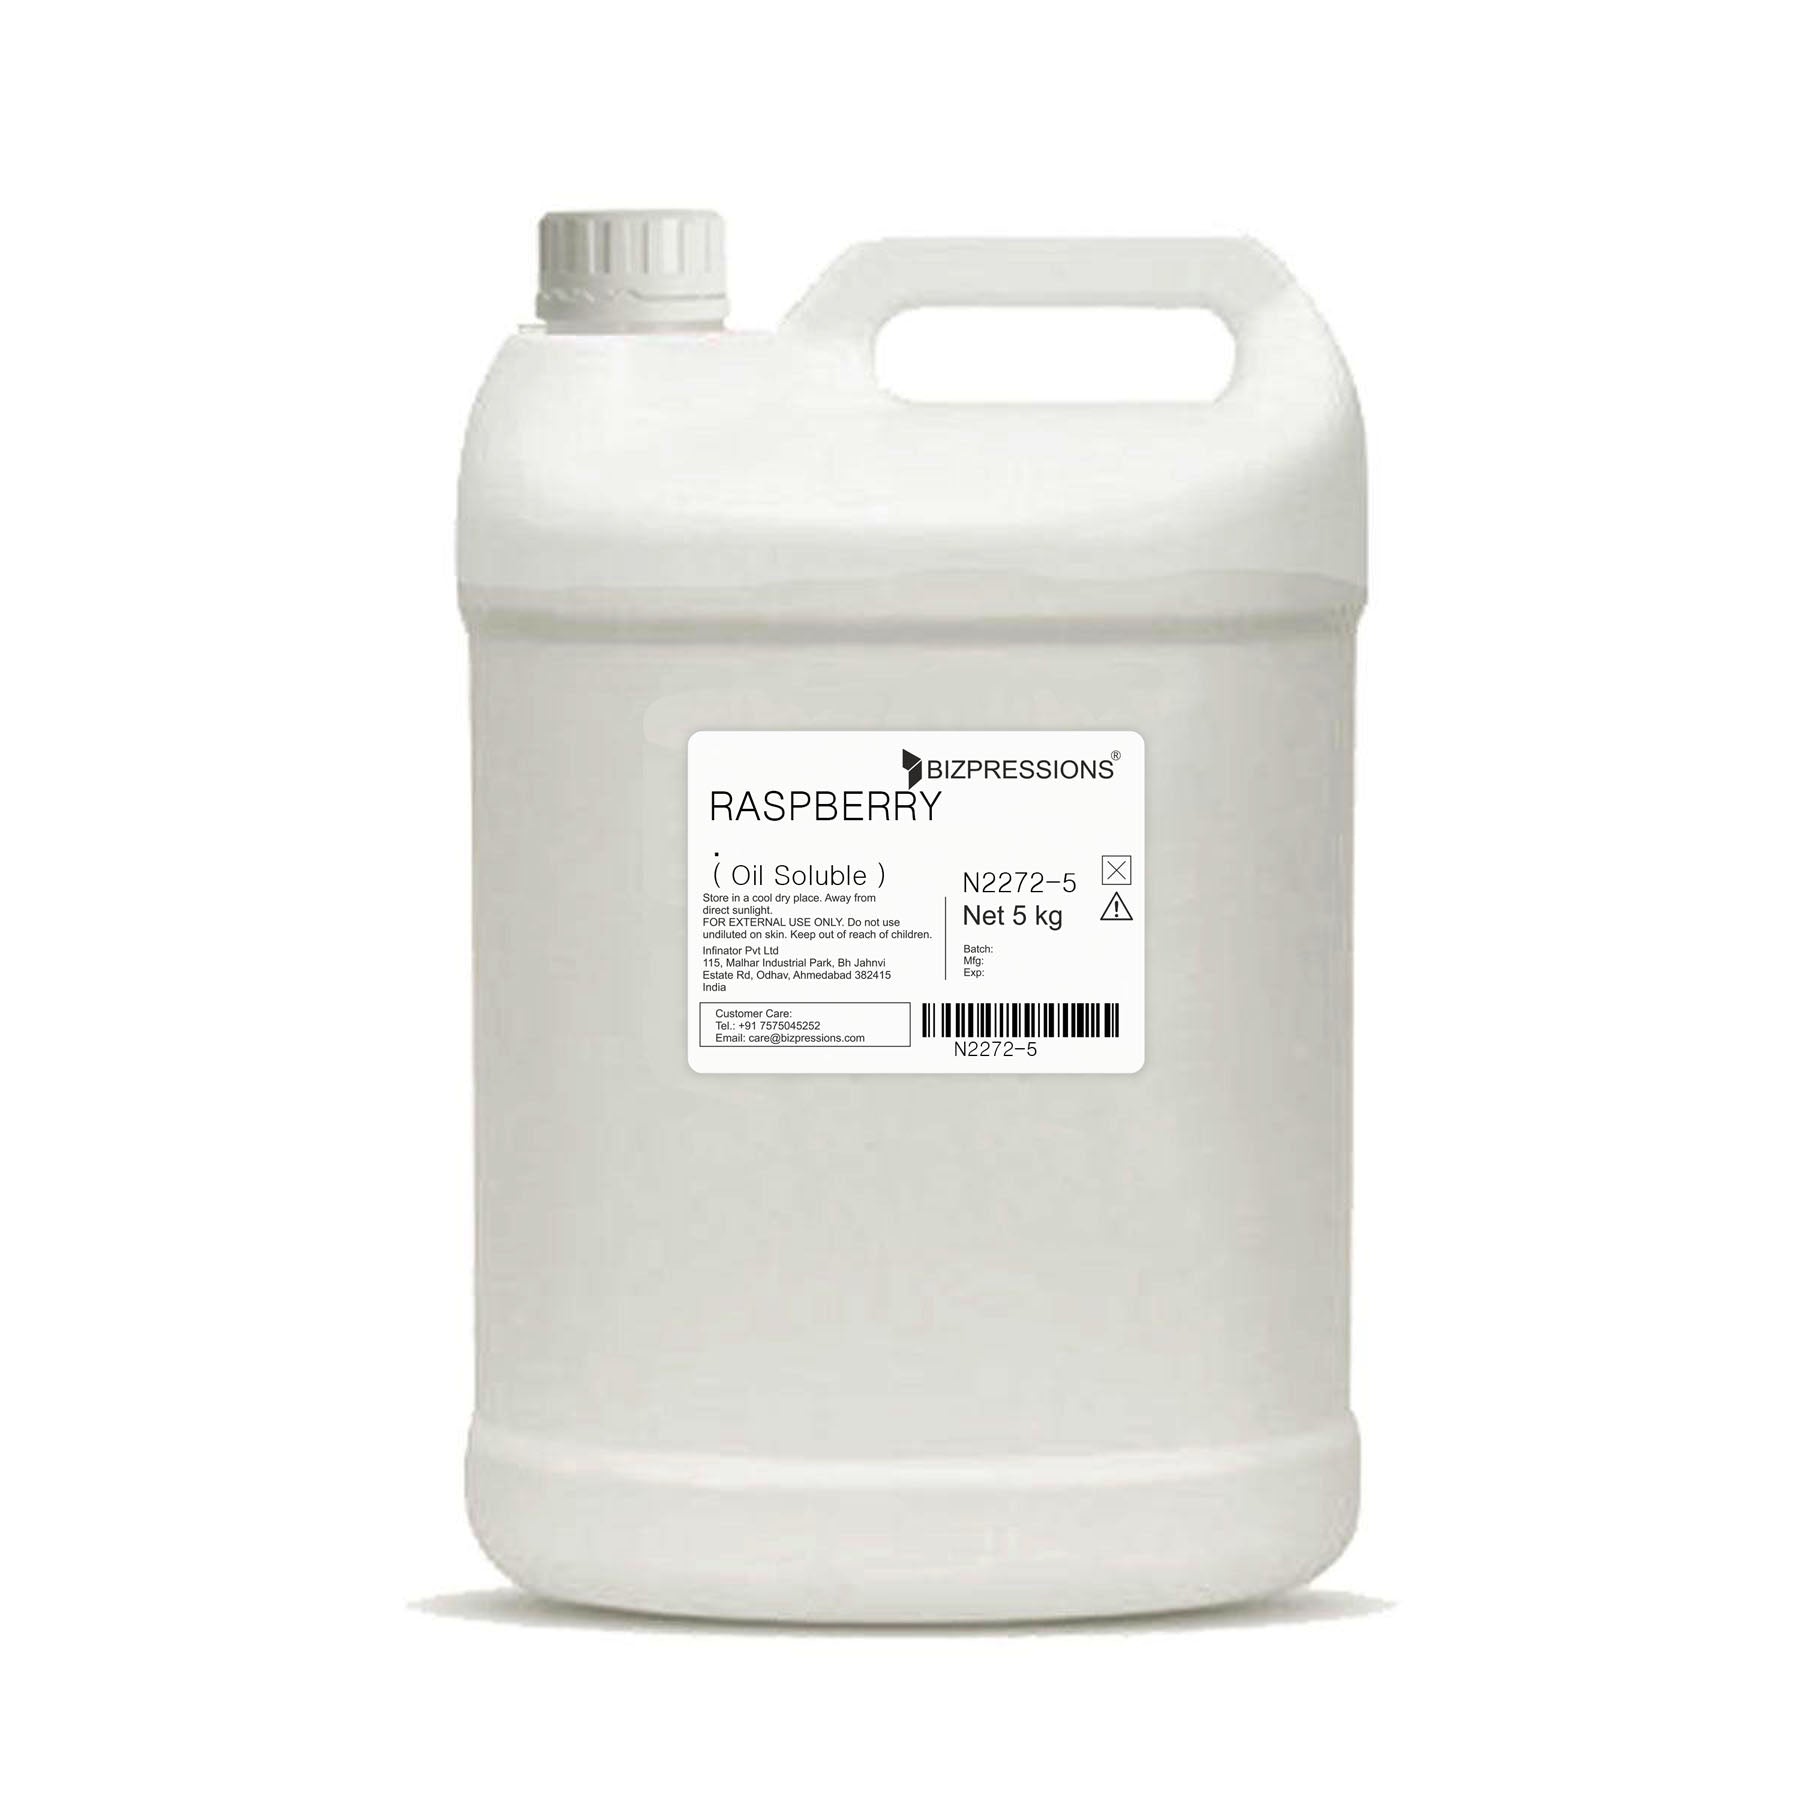 RASPBERRY - Fragrance ( Oil Soluble ) - 5 kg